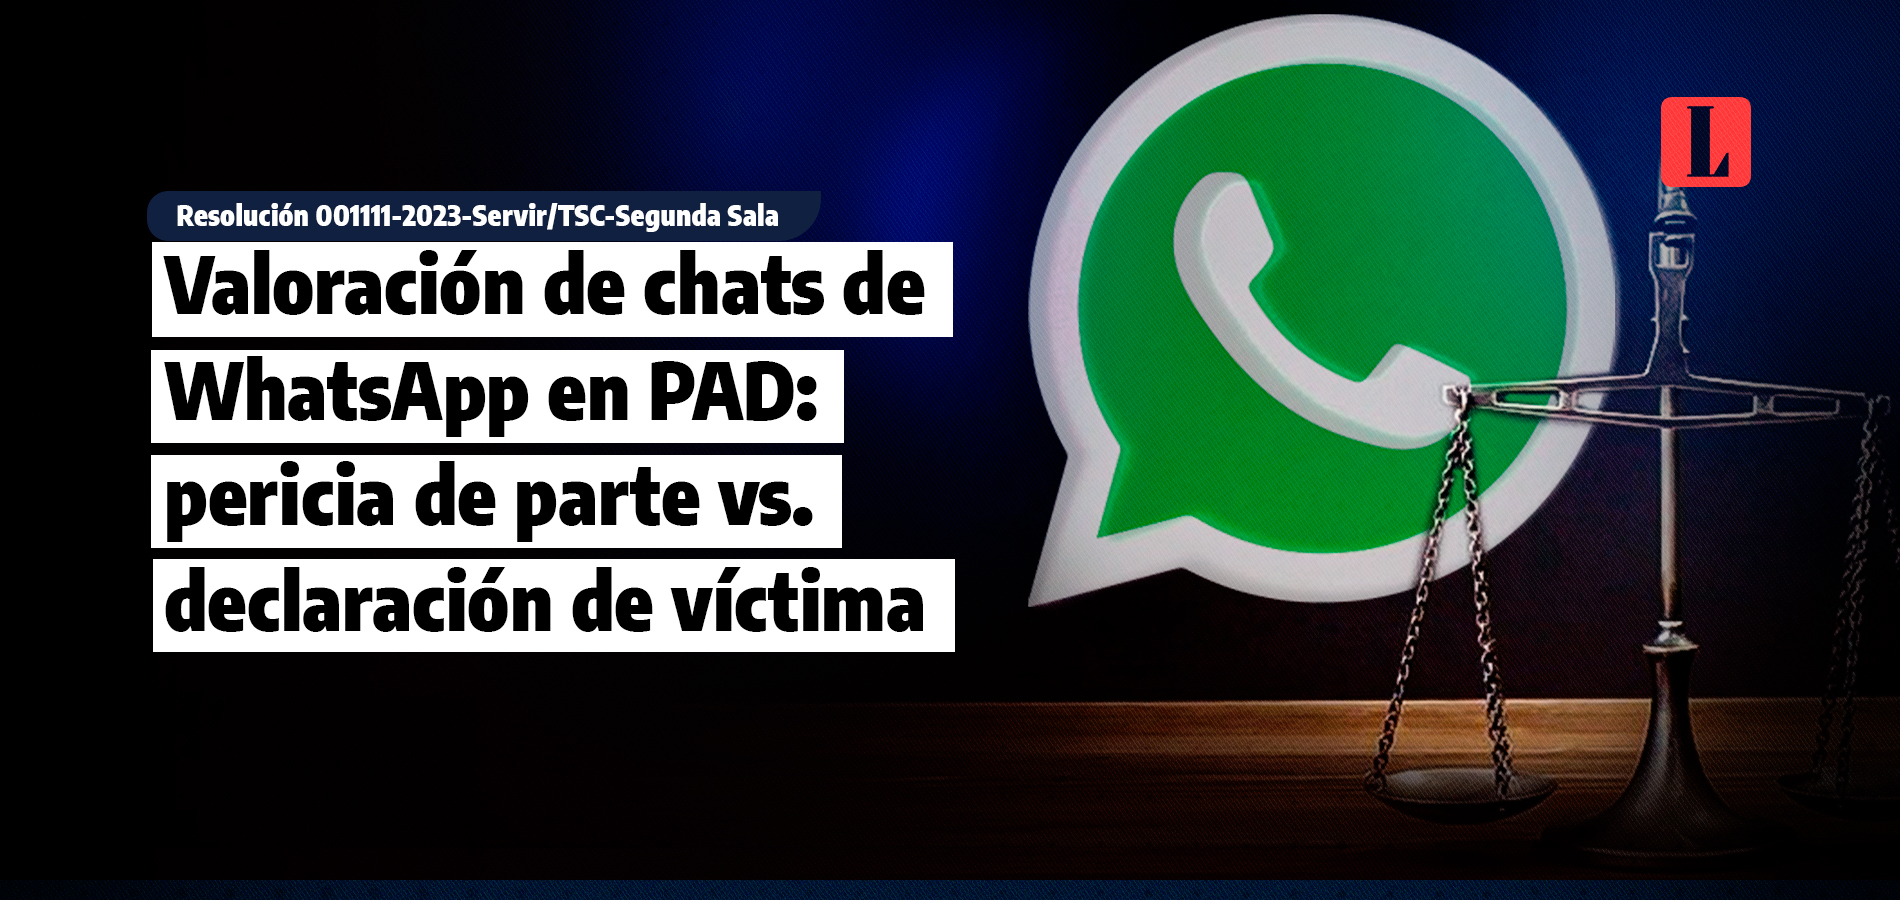 Valoración de chats de WhatsApp en PAD: pericia de parte vs. declaración de víctima